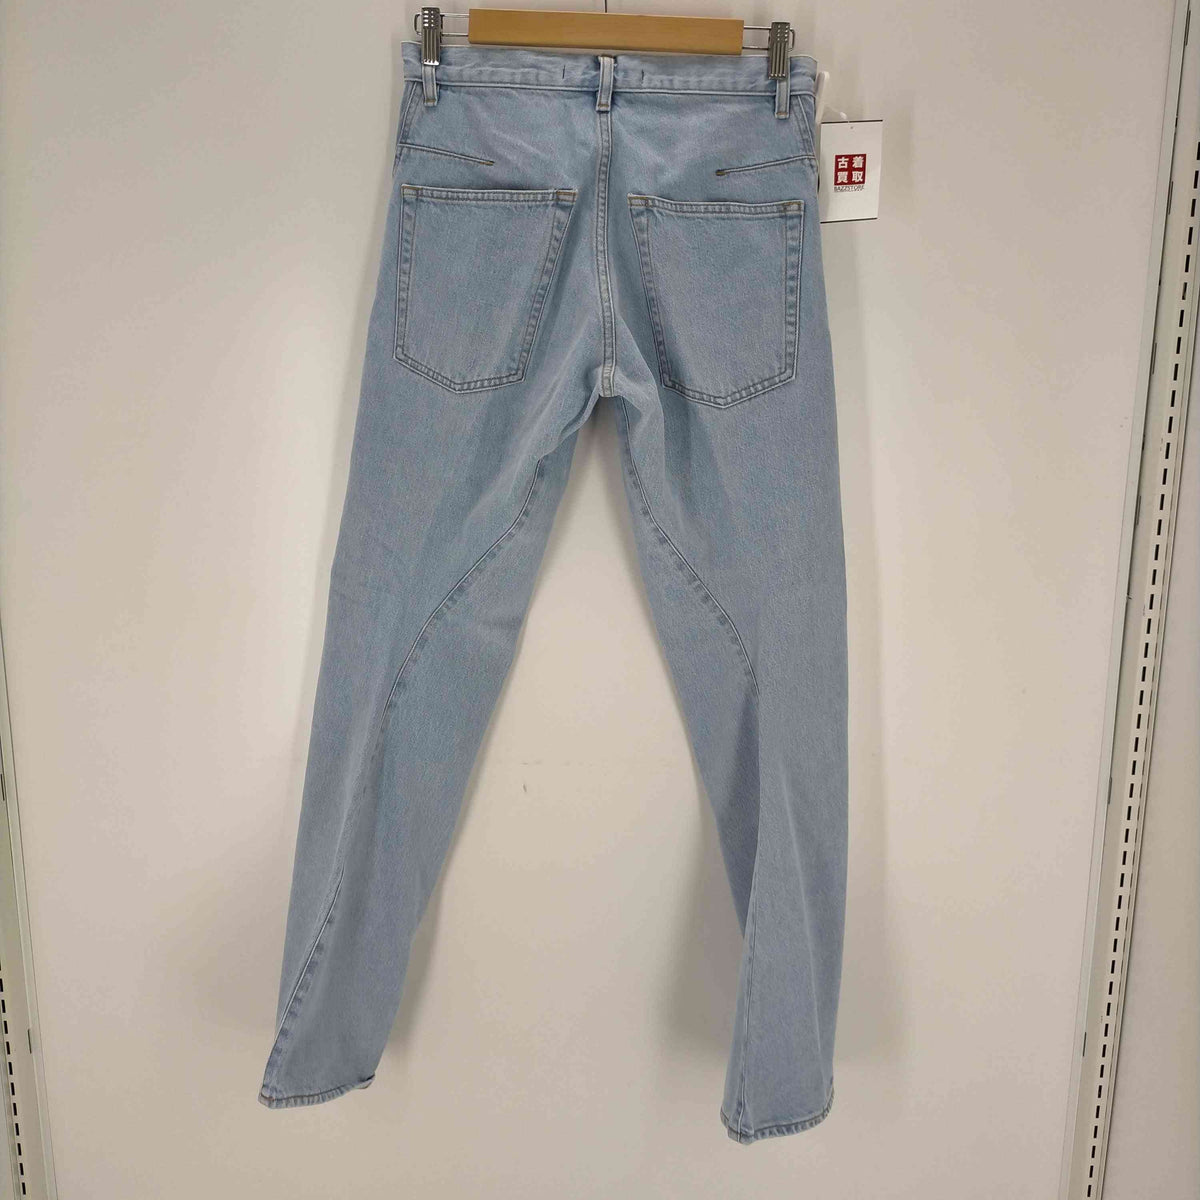 数量限定・即納特価!! NVRFRGT 23ss 3D Twisted Jeans